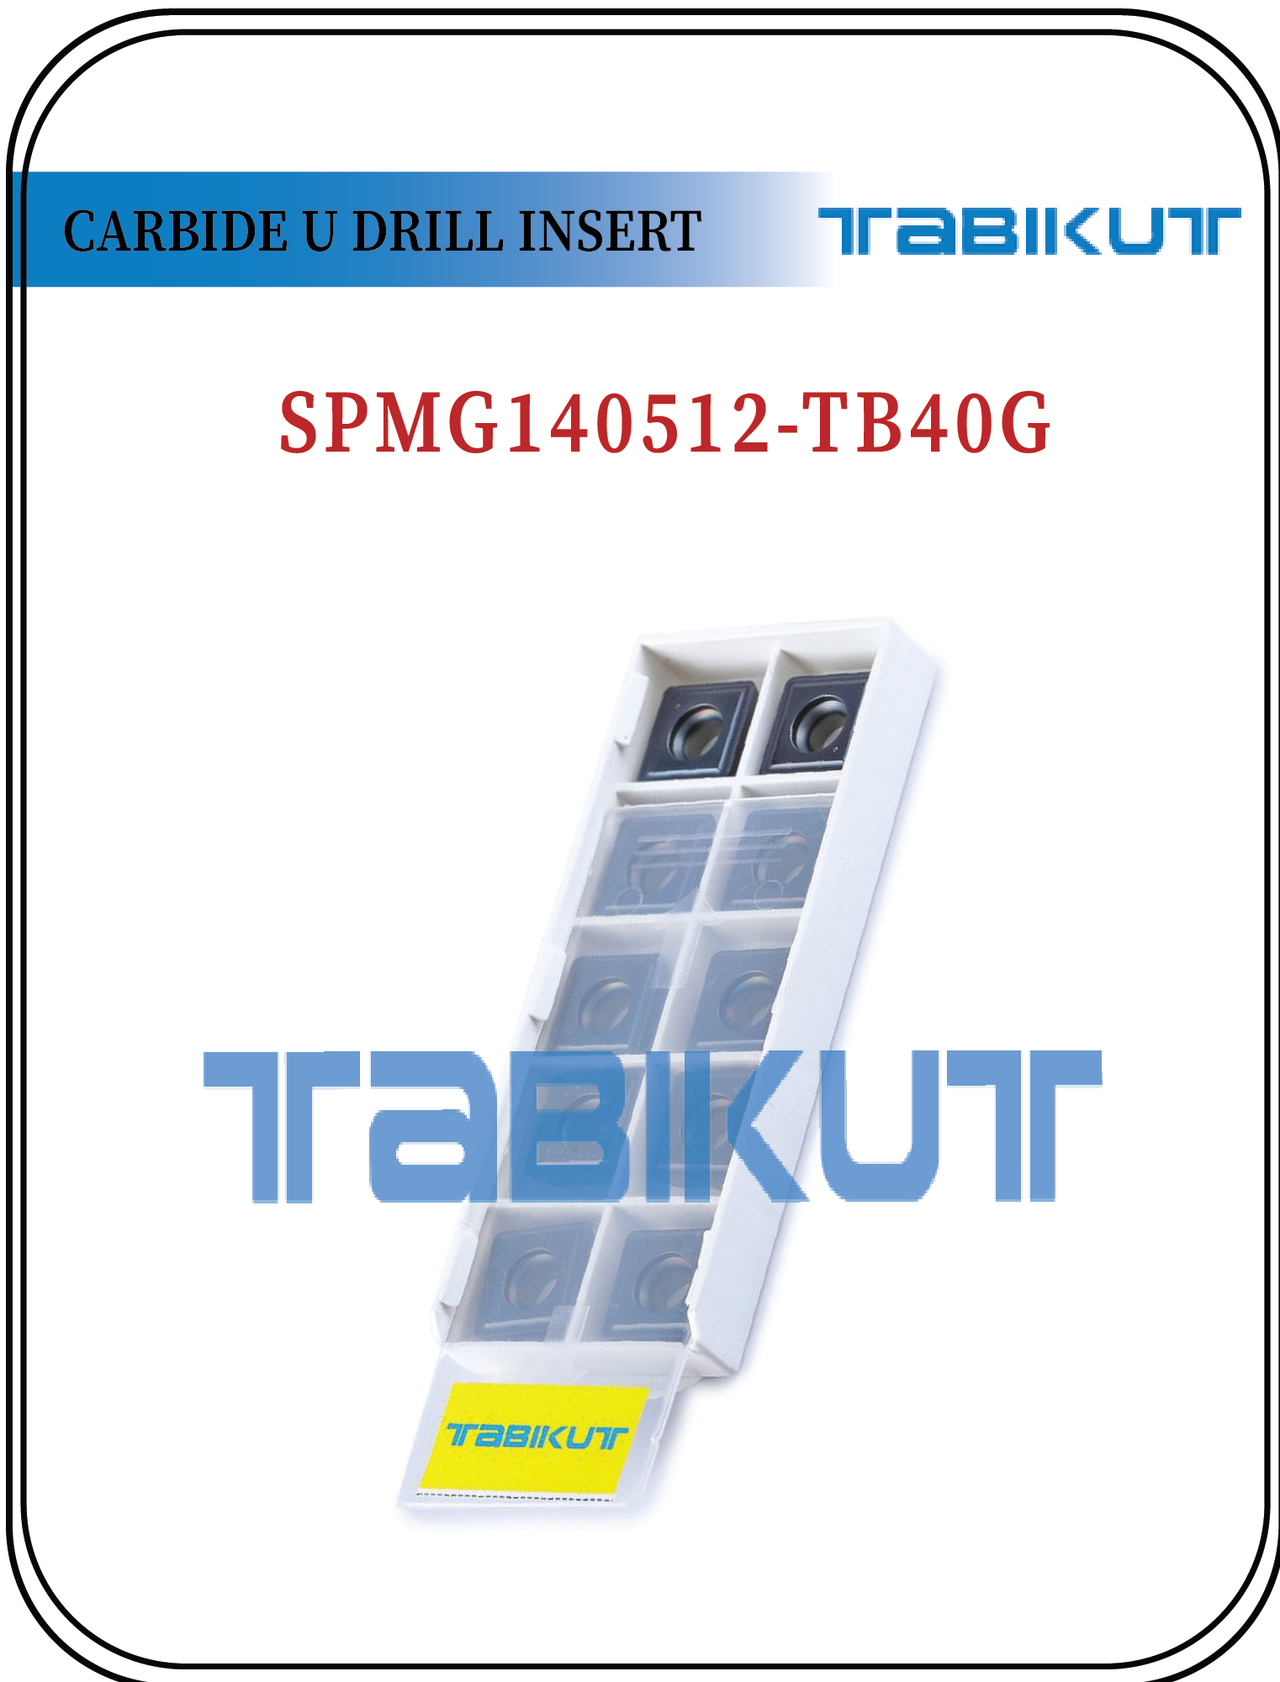 SPMG140512 TABIKUT Carbide Drilling Insert